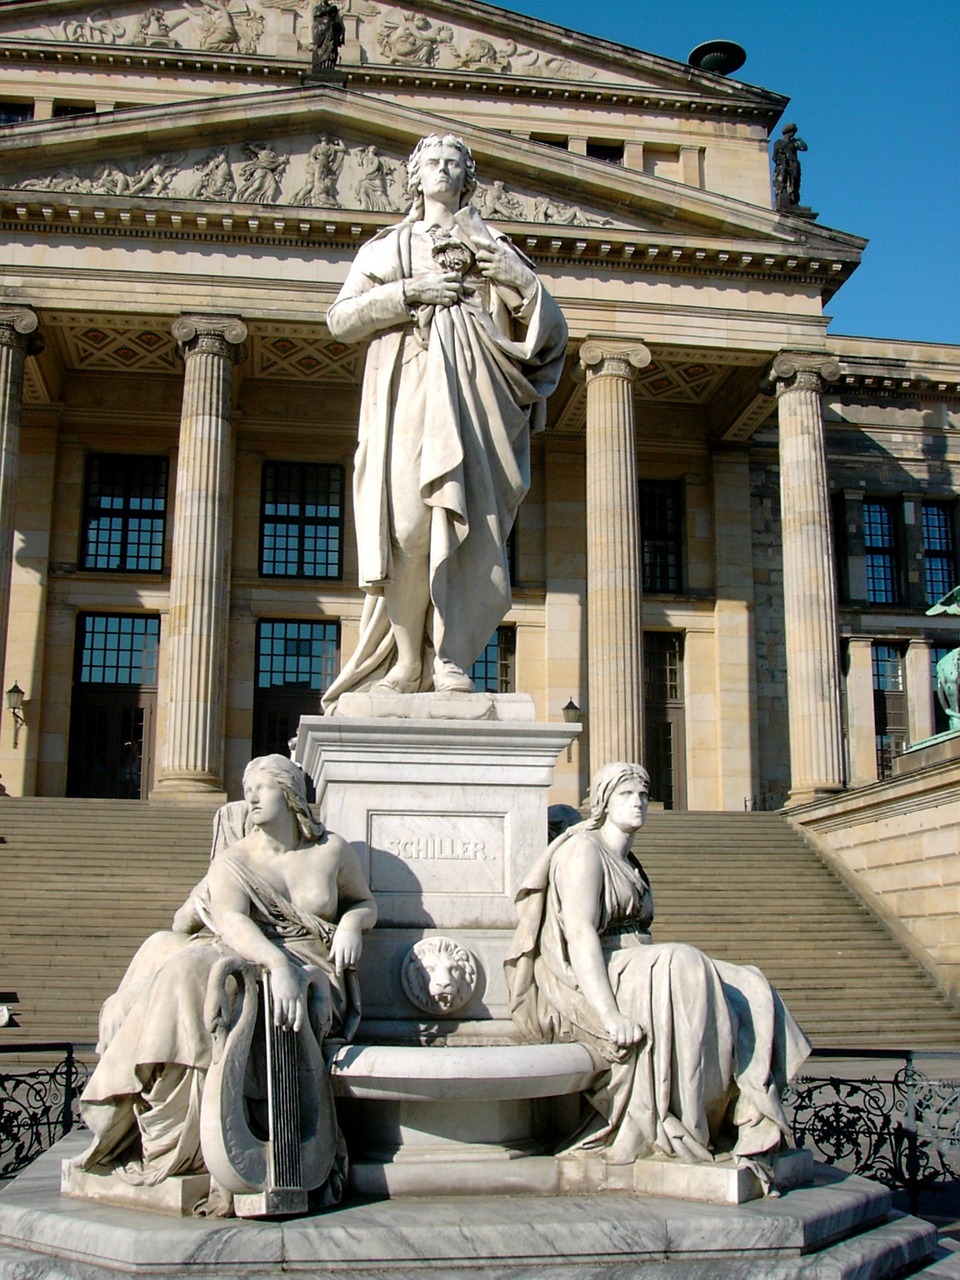 Schellerův pomník před Schauspielhaus Berlin s klasicistní fasádou